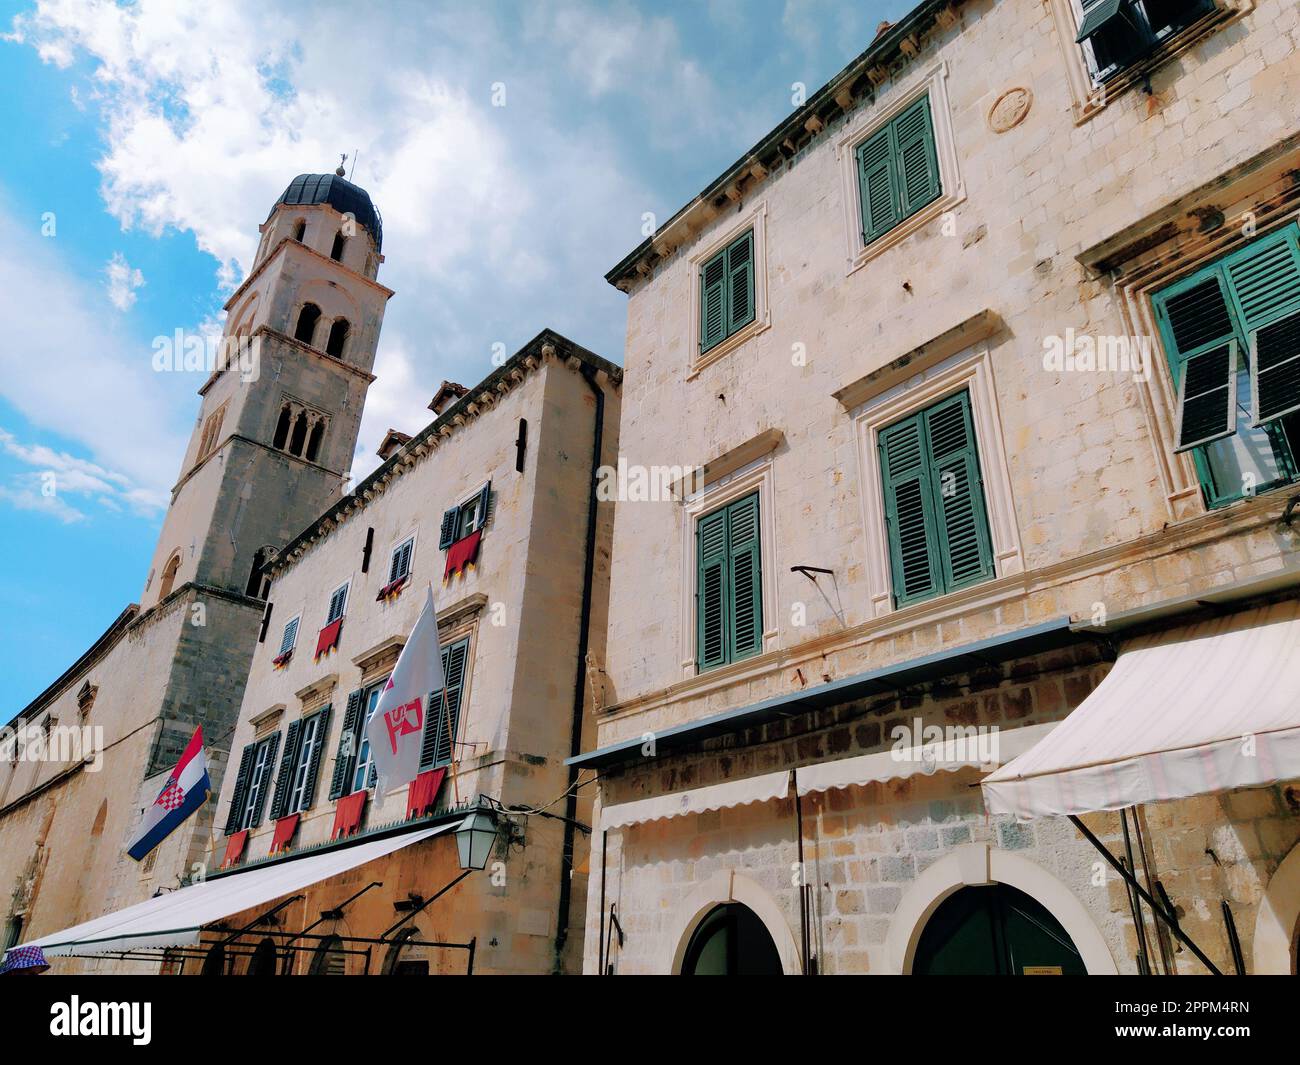 Stradun, Stradone è la strada principale del centro storico di Dubrovnik in Croazia. attrazioni architettoniche. Un luogo popolare per le passeggiate turistiche. 14 agosto 2022 Torre e facciate di antiche case. Foto Stock